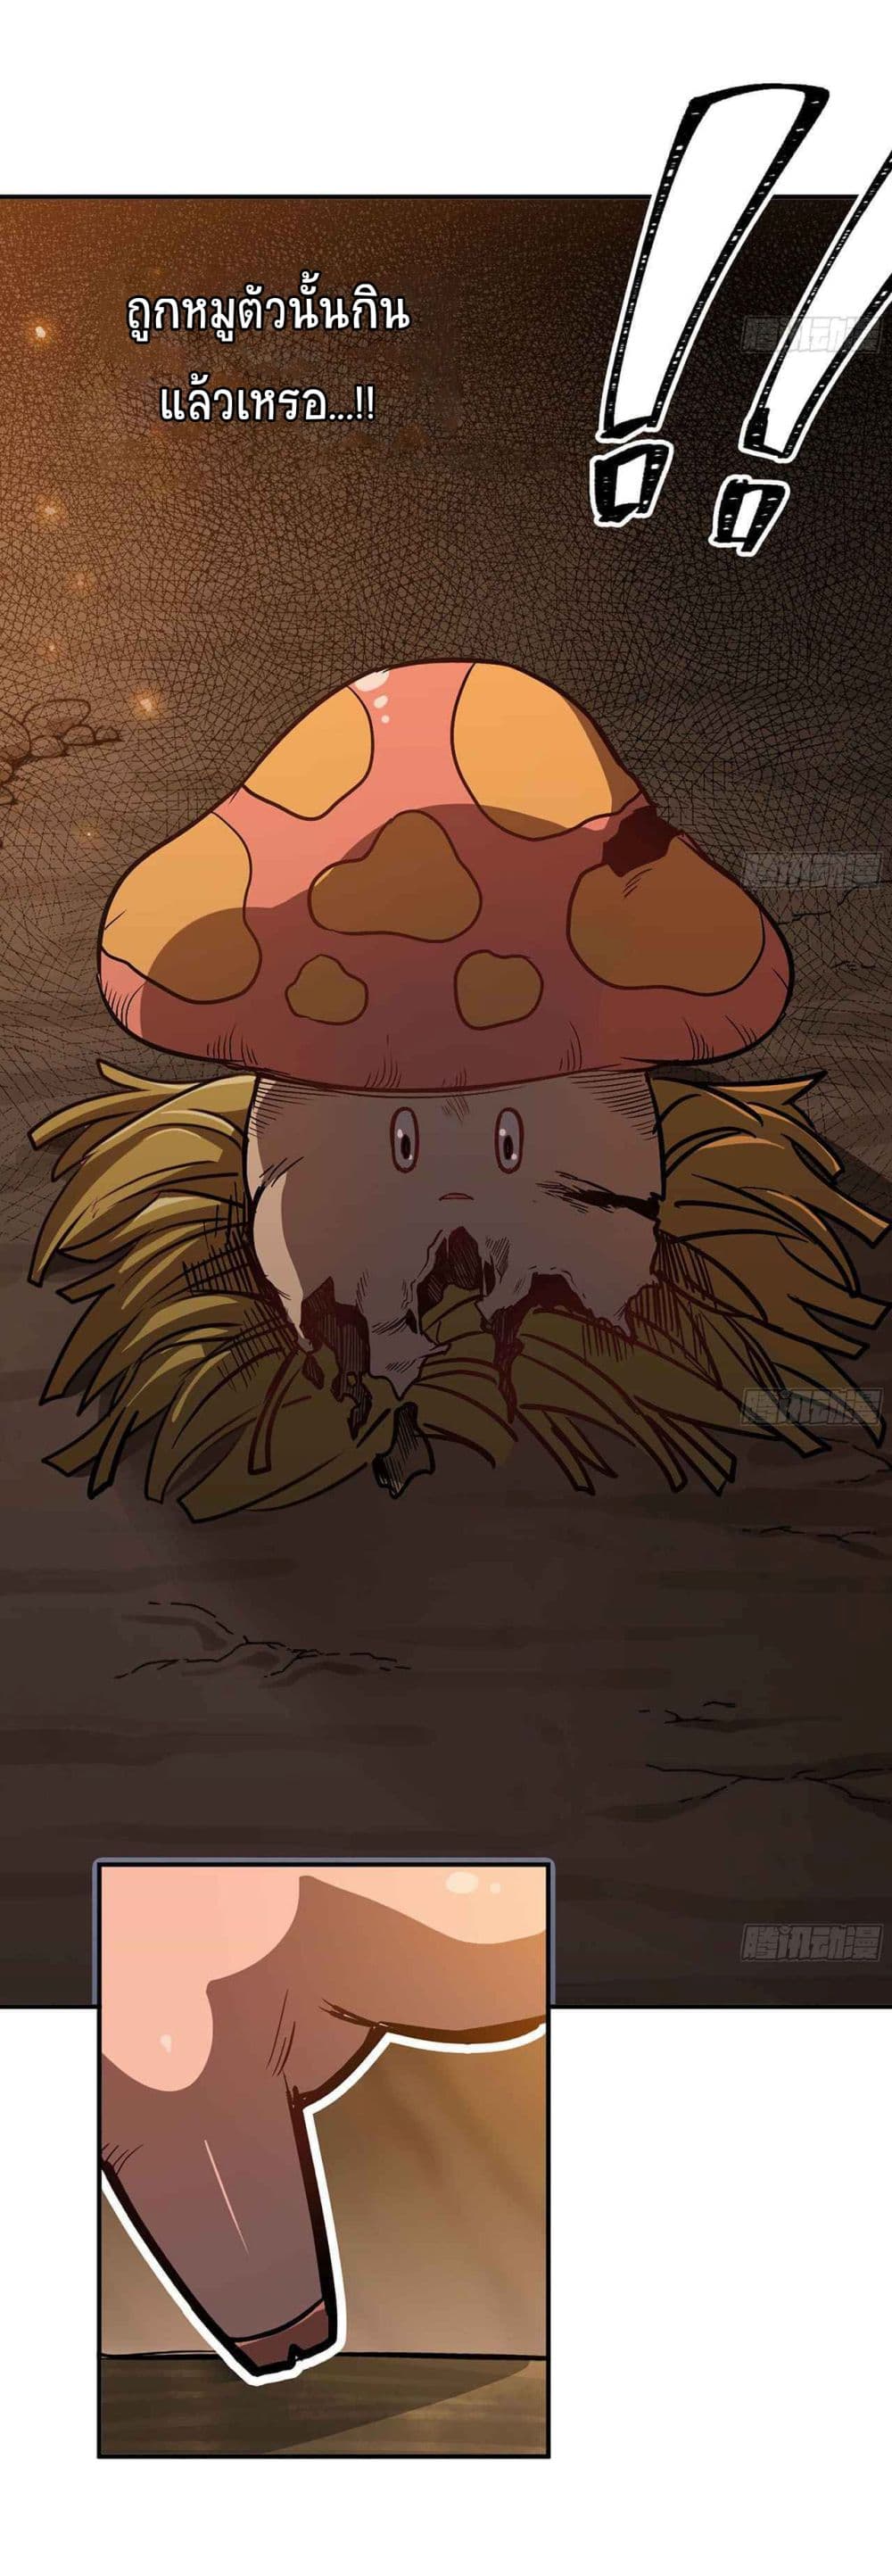 Mushroom Brave9 (13)